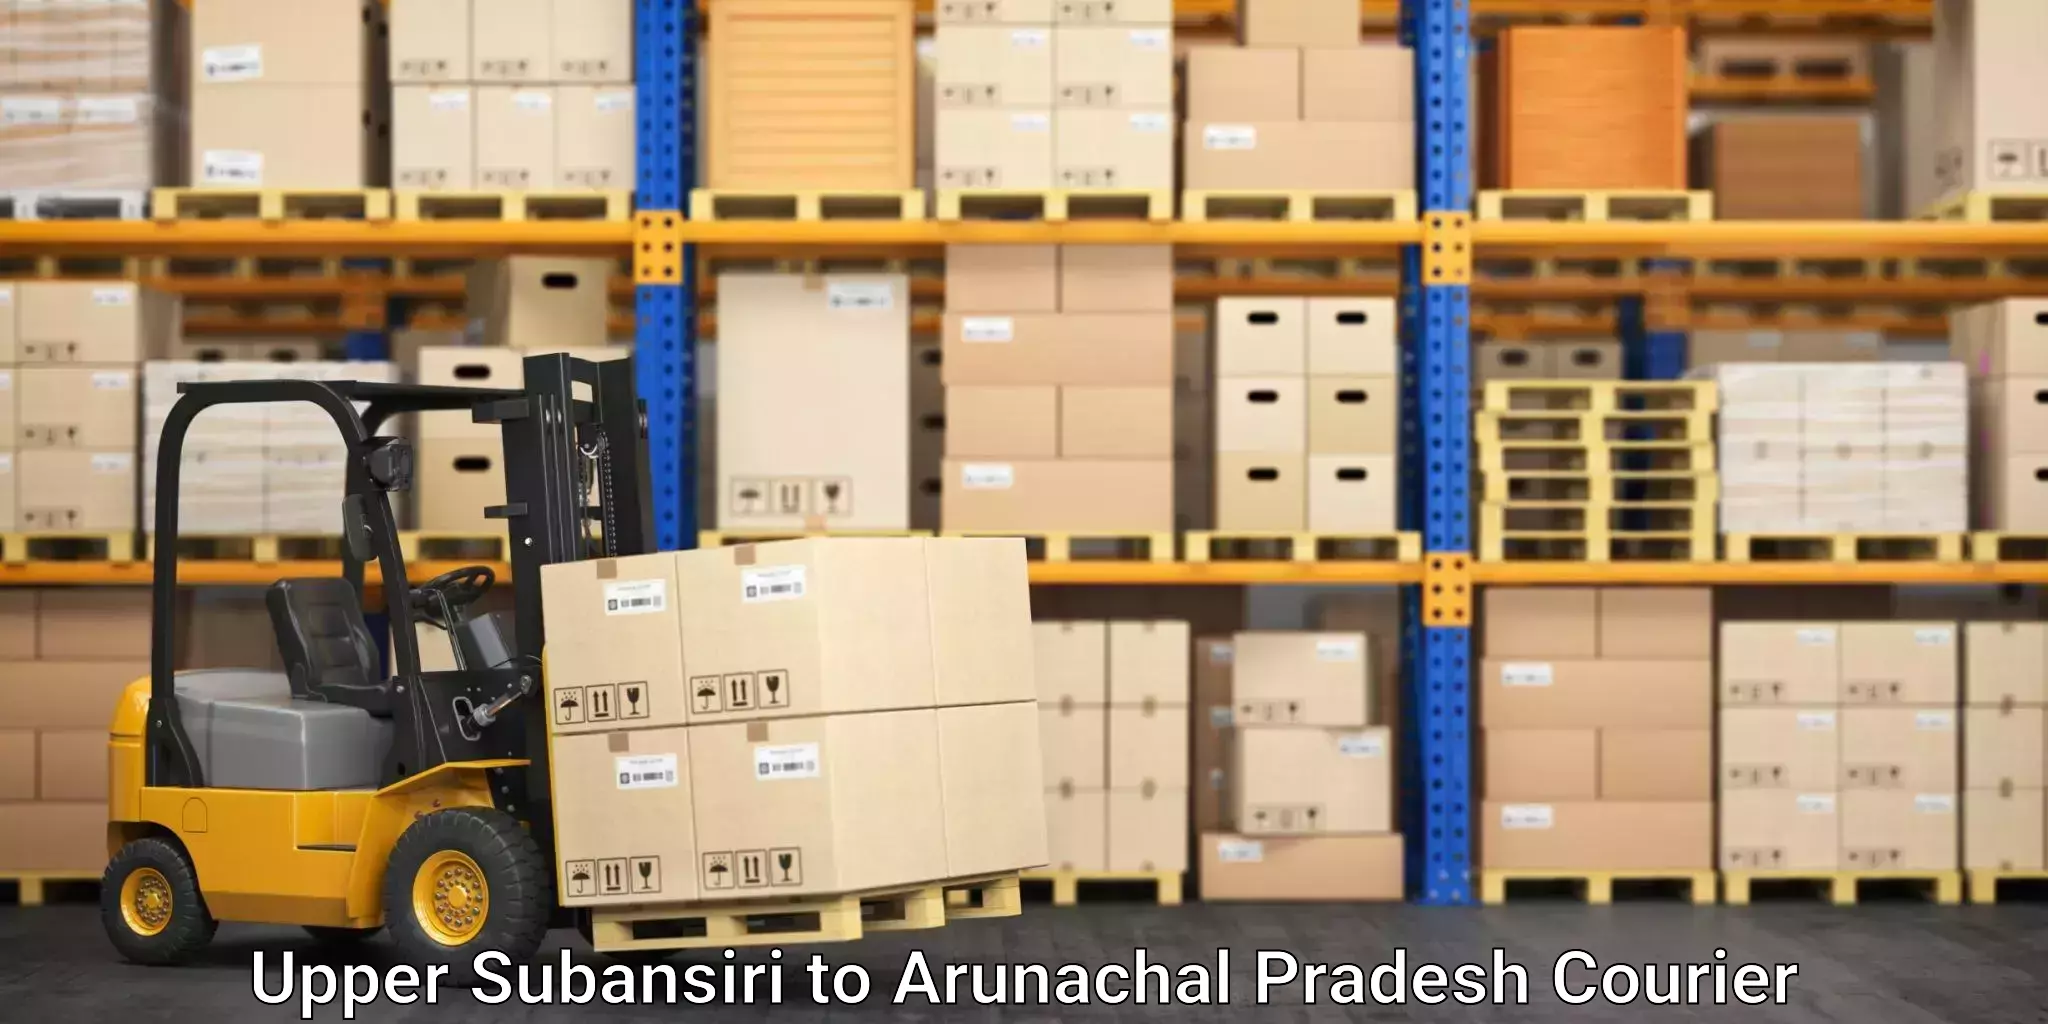 Specialized courier services Upper Subansiri to Arunachal Pradesh